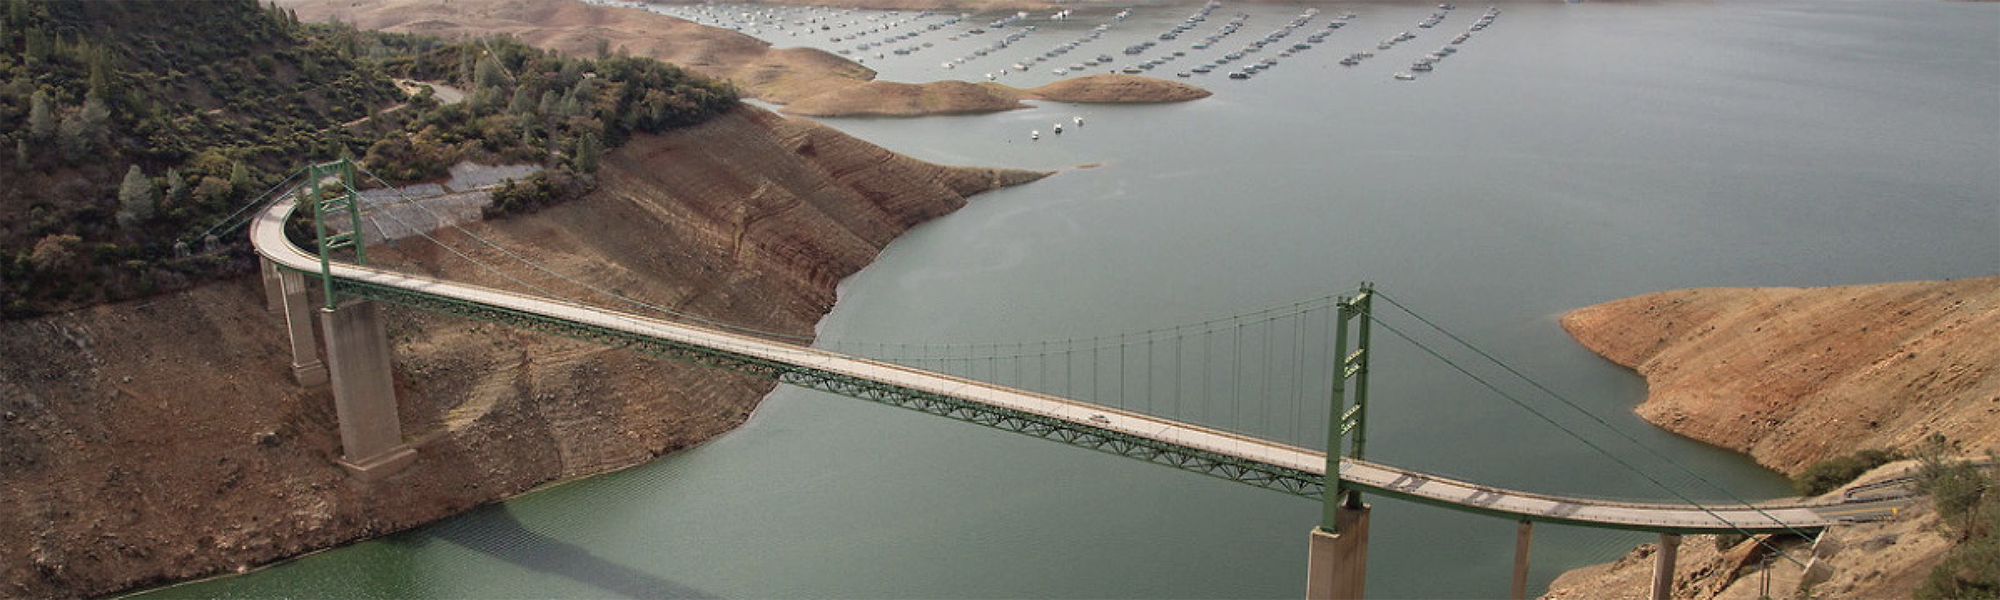 Planta de City of Industry, California, de Ecolab certificada como líder en administración del agua